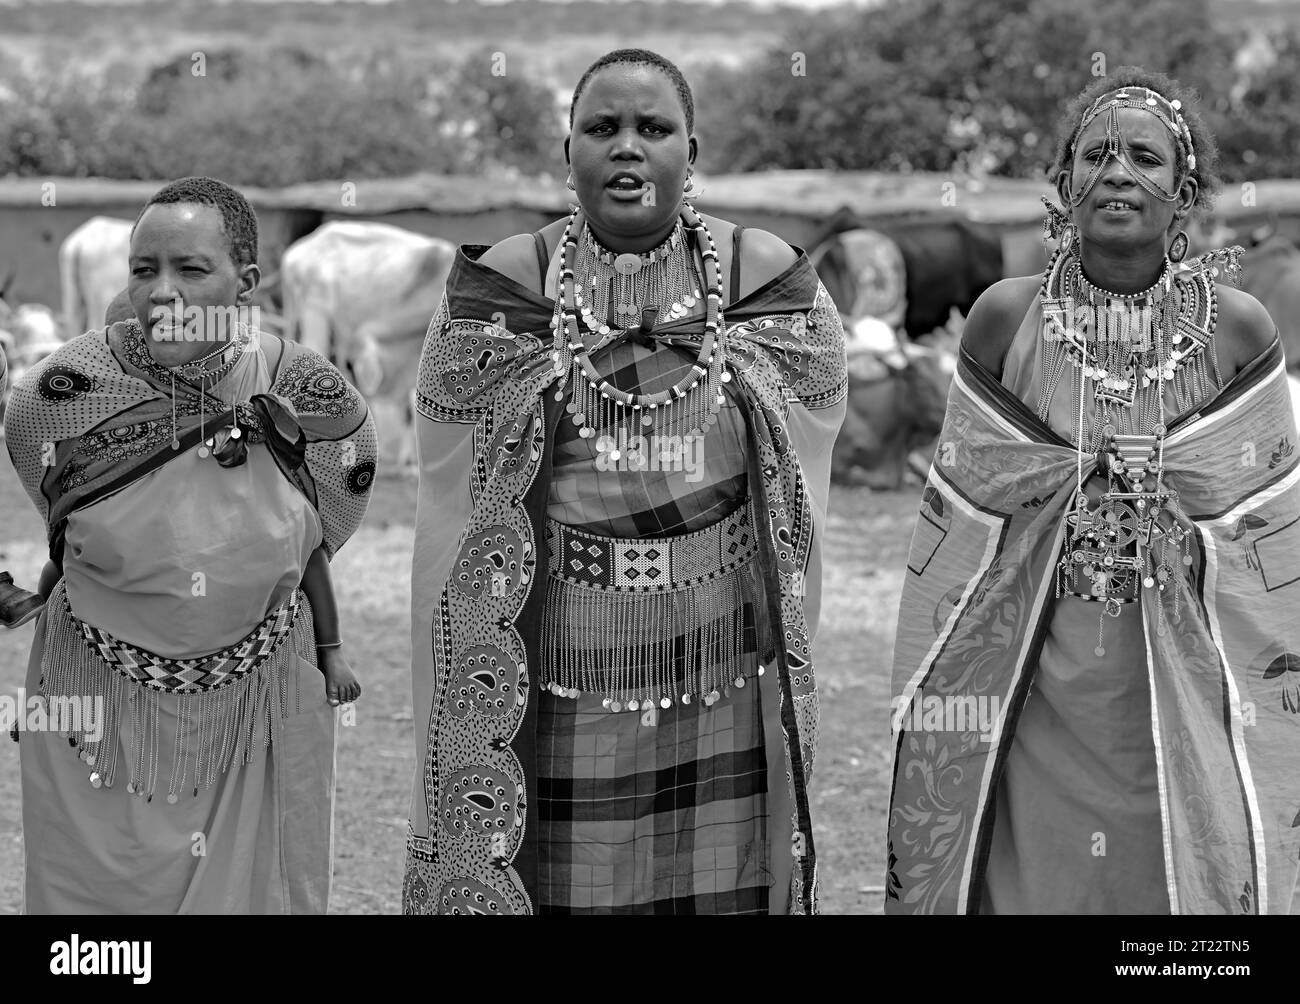 Peuple tribal de Maasai Mara divertissant les visiteurs avec leurs coutumes traditionnelles dans leur village Banque D'Images